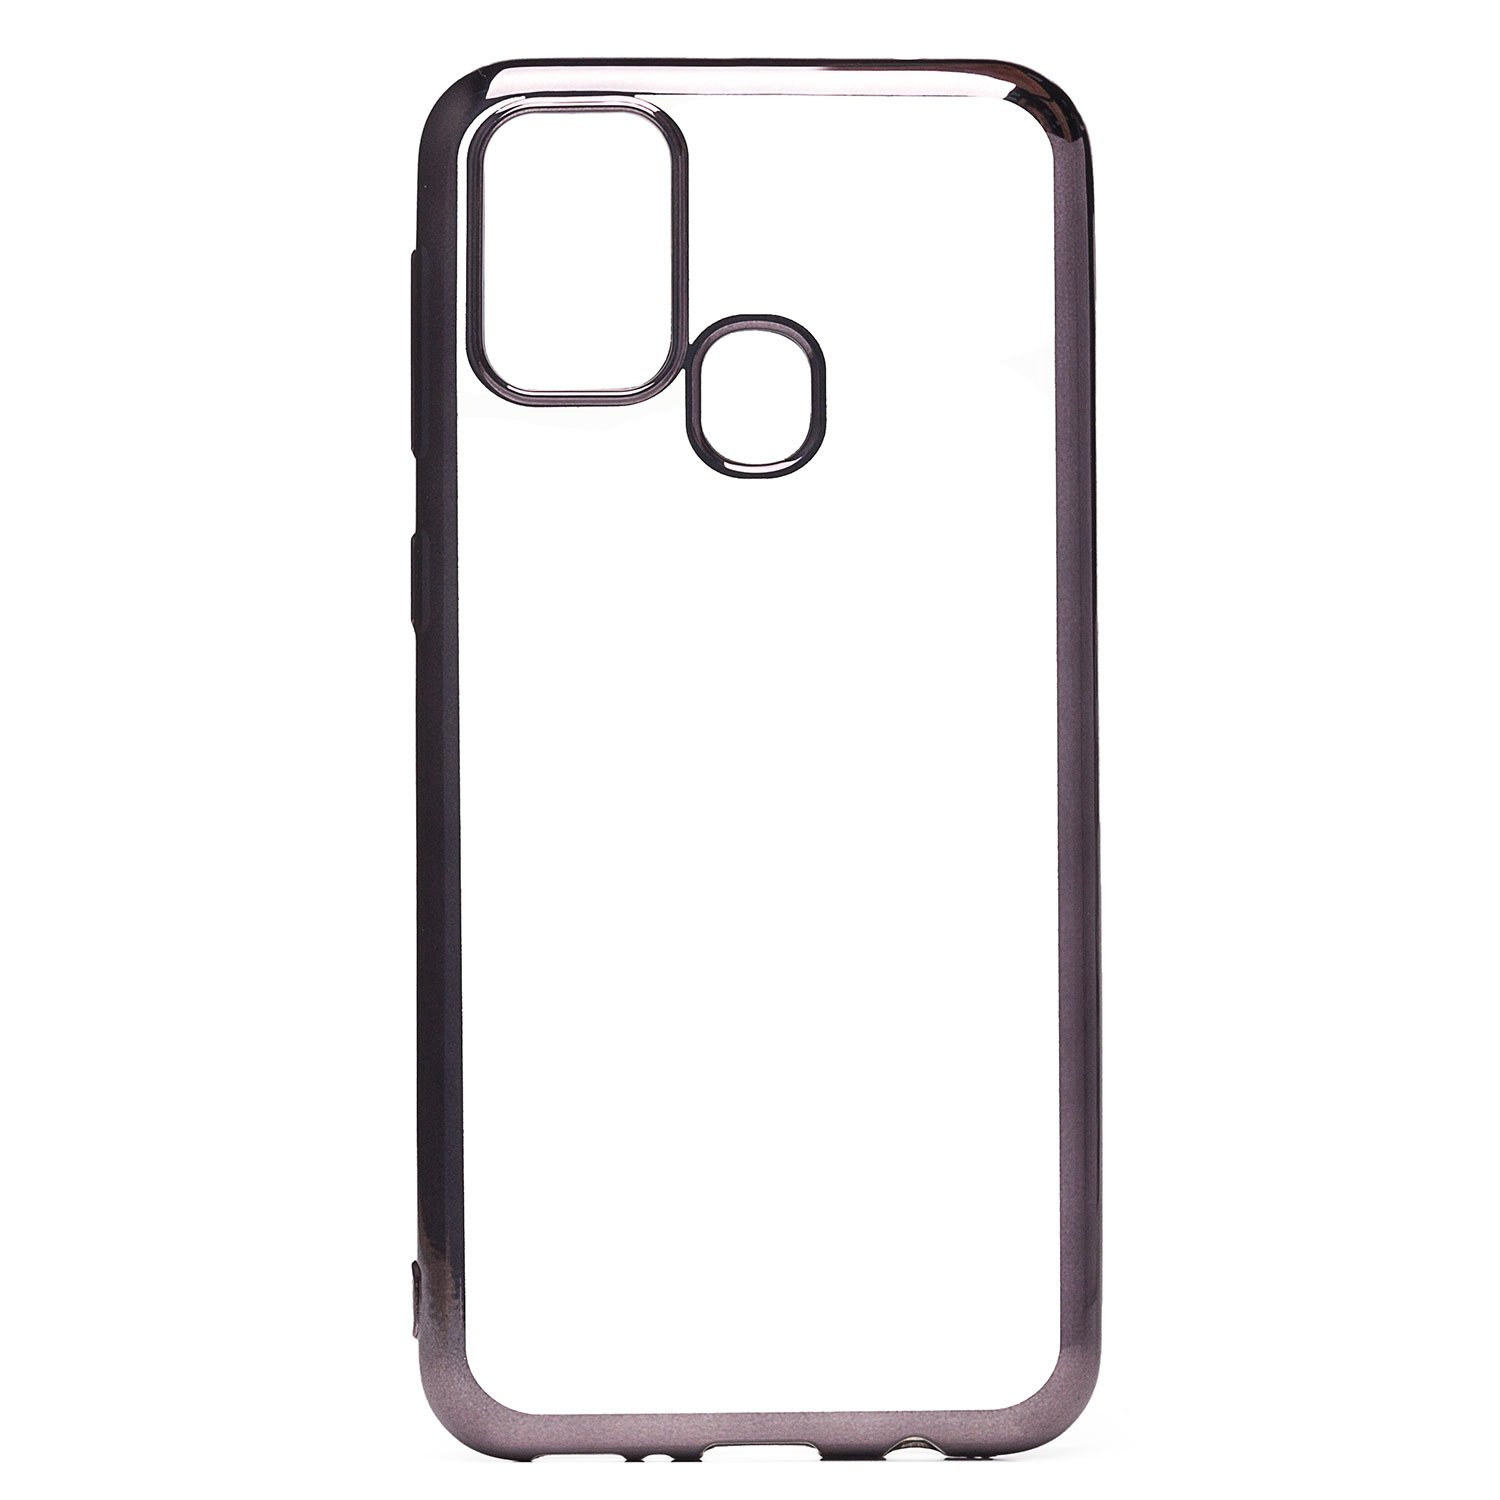   E2E4 Чехол-накладка Activ Pilot для смартфона Samsung Galaxy M21 2021 Edition, силикон, черный (133518)